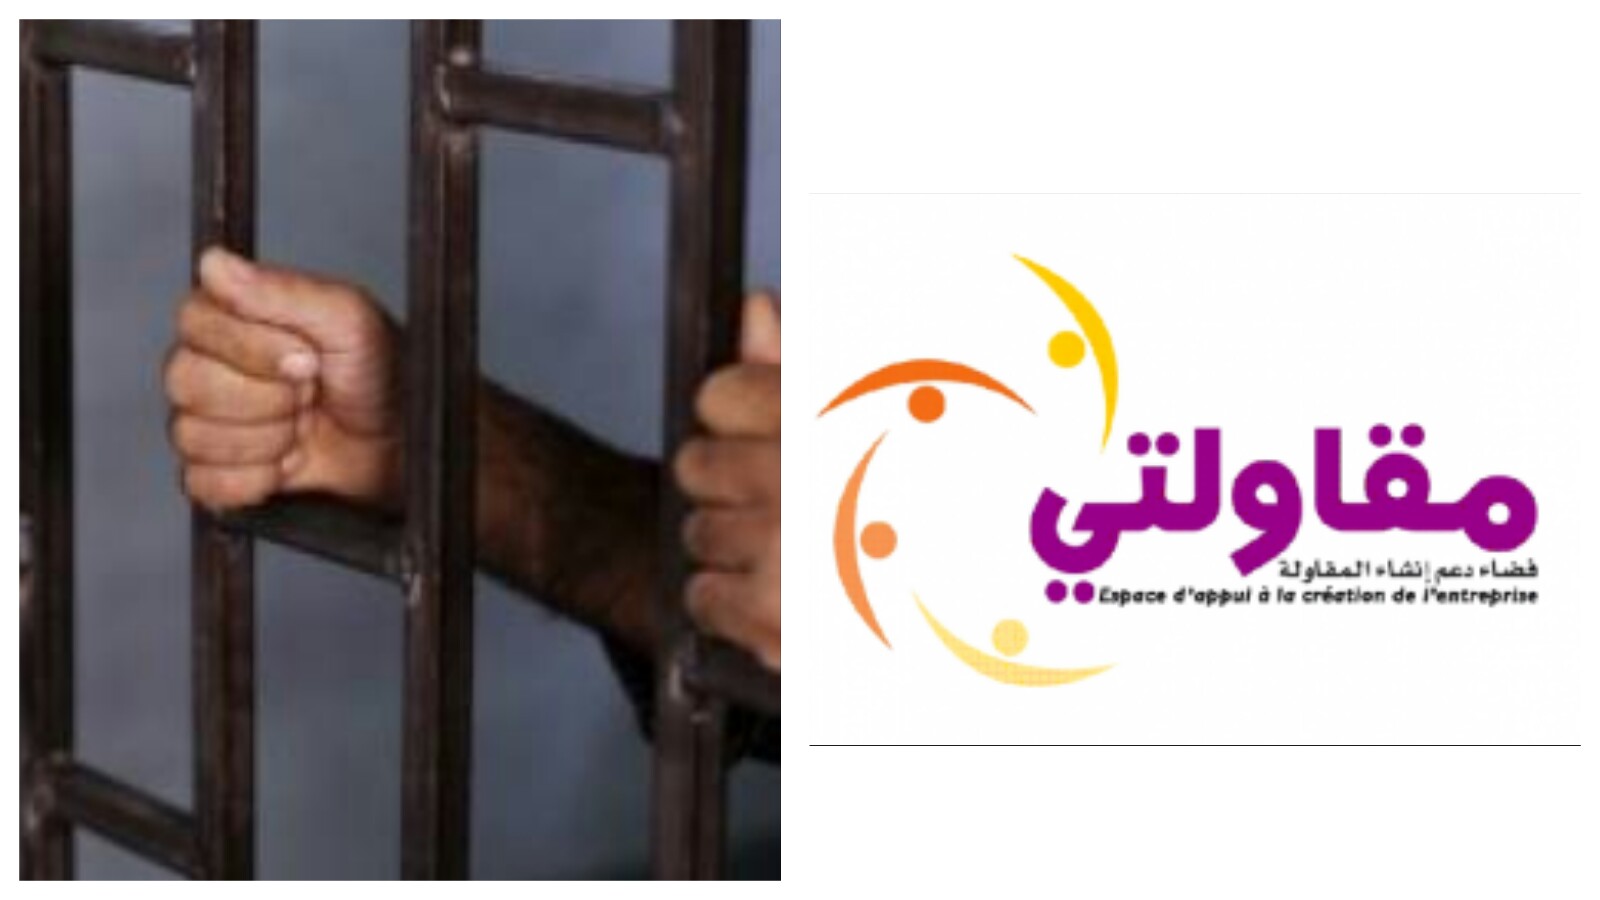 اعتقال مقاول من جهة بني ملال خنيفرة من وسط البرلمان ضحية برنامج مقاولتي